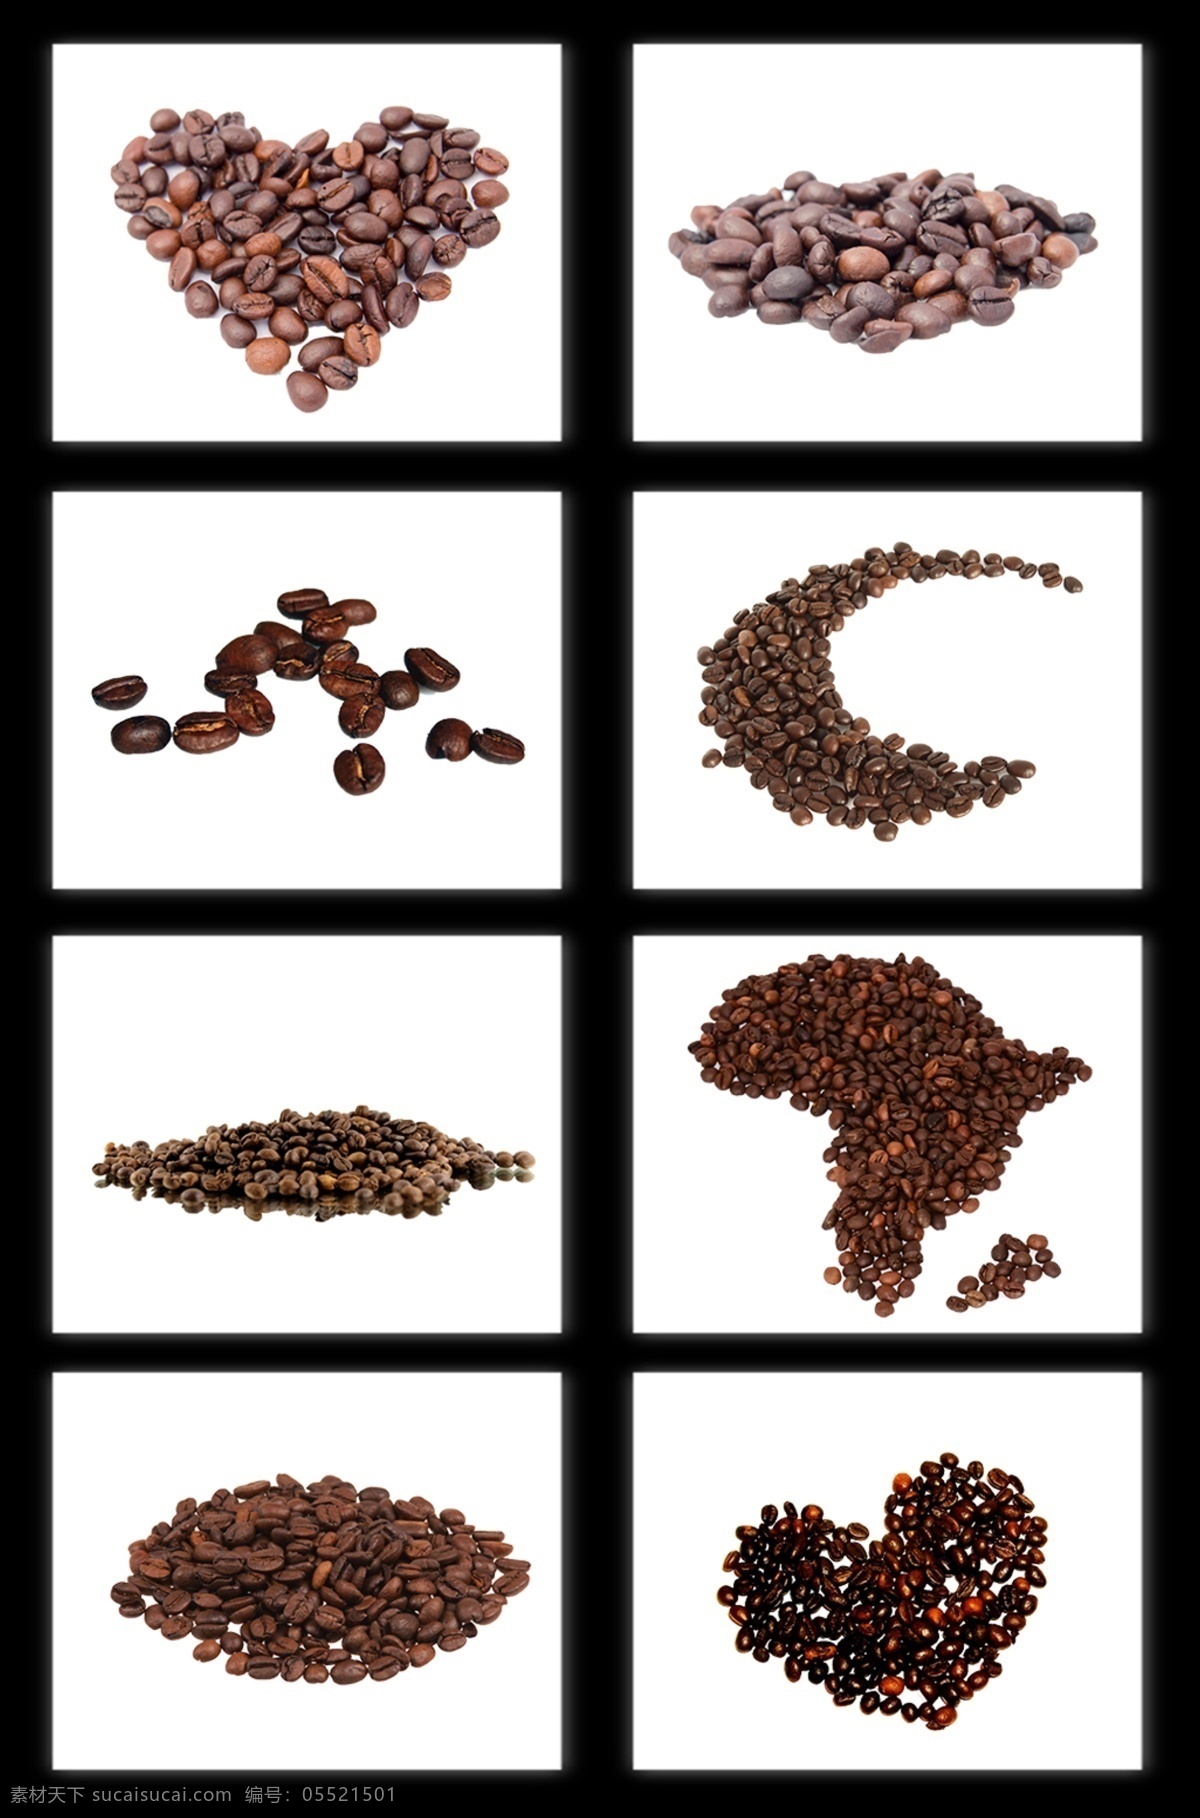 高清 免 抠 咖啡豆 免抠咖啡豆 png素材 高清褐色 黑色咖啡 咖啡豆零食 设计素材 平铺 散落 零食 原料 咖啡 美食 饮料 褐色 食物原料 餐饮美食 黑色 分层 背景素材